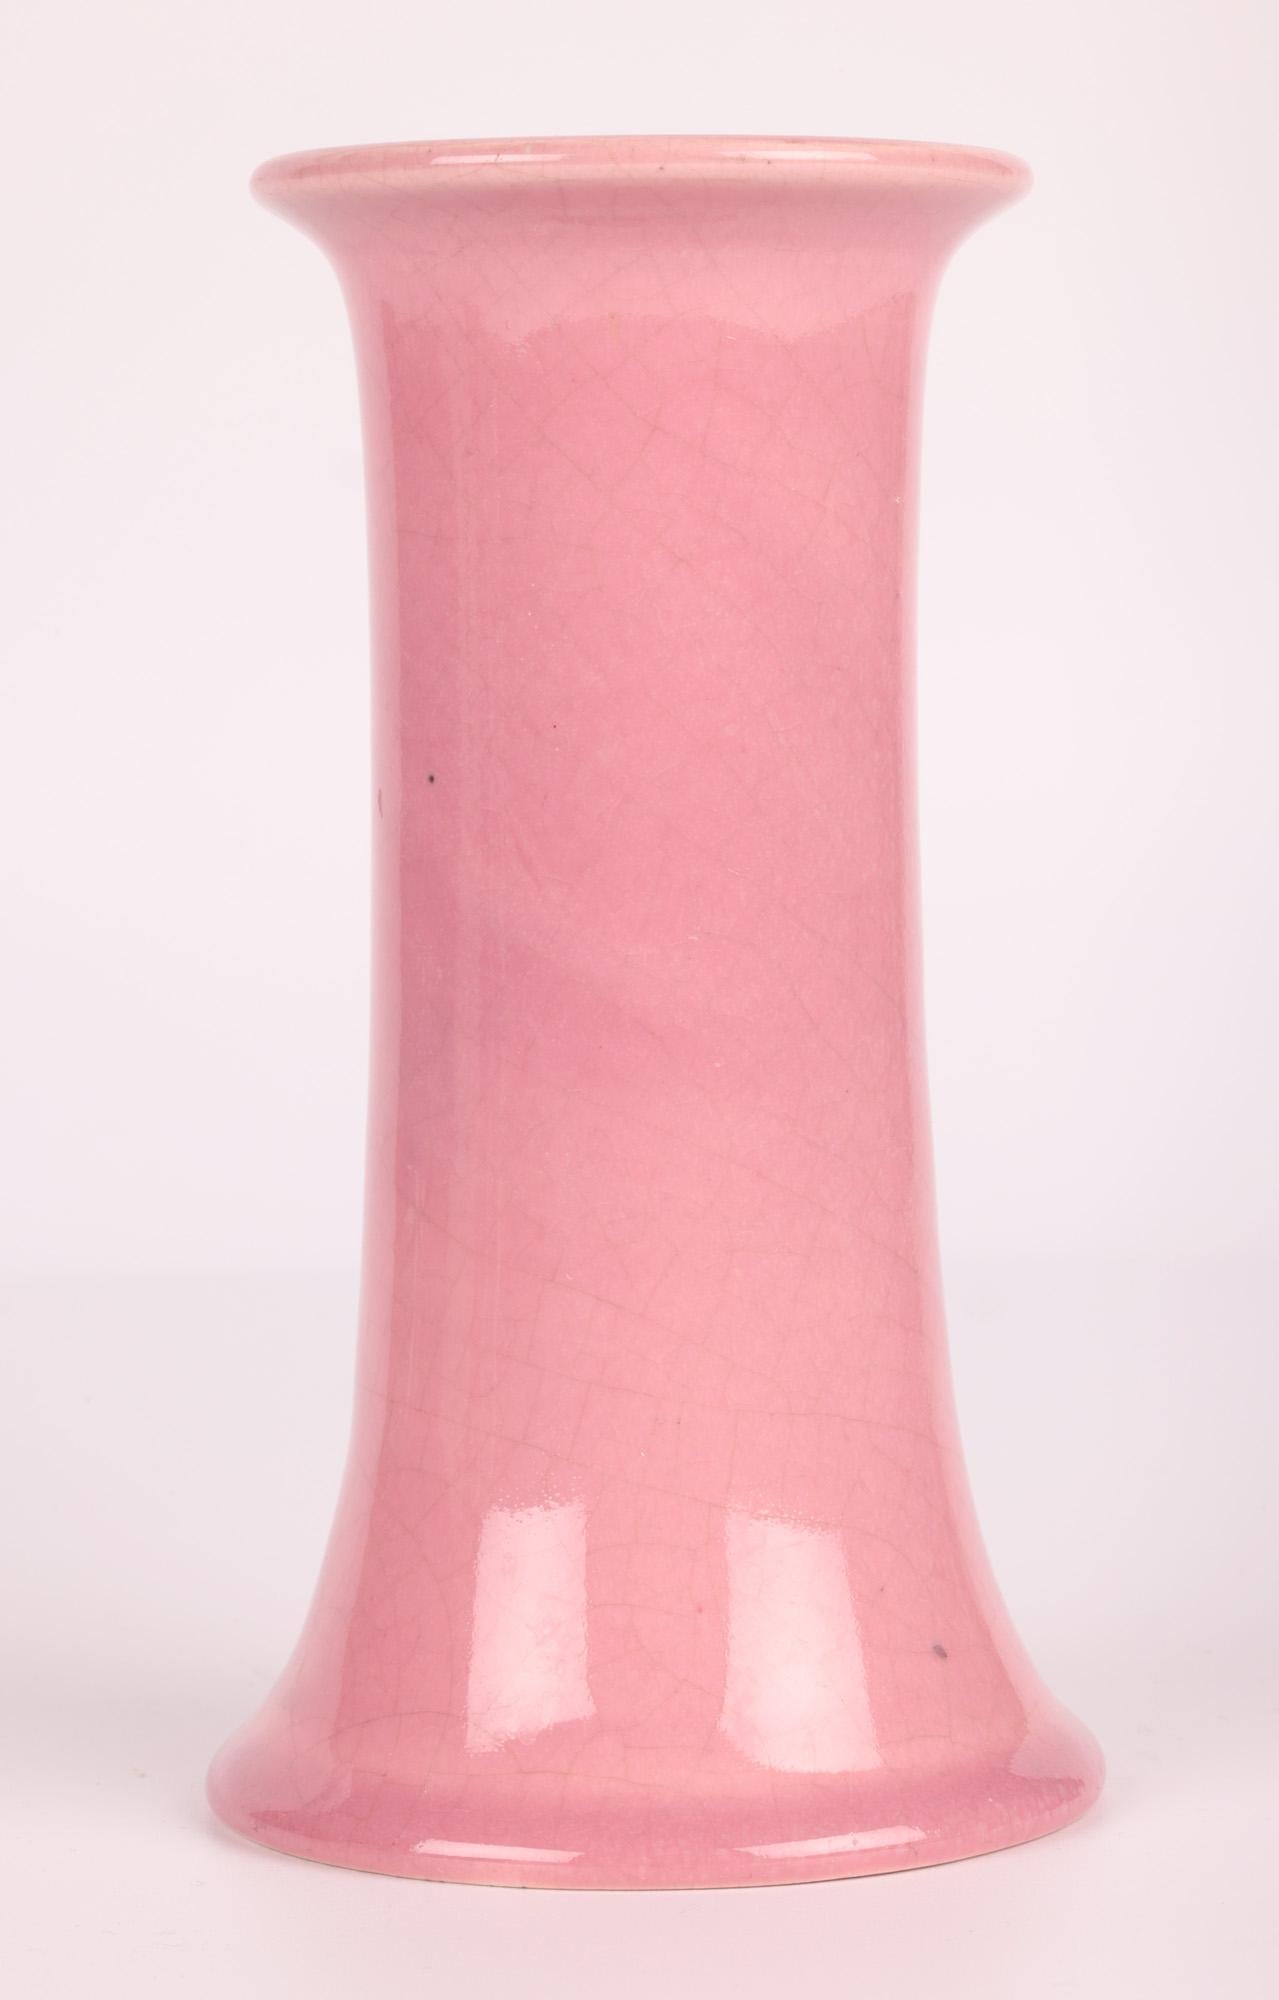 Bretby Arts & Crafts Pink Glazed Art Pottery Vase 2